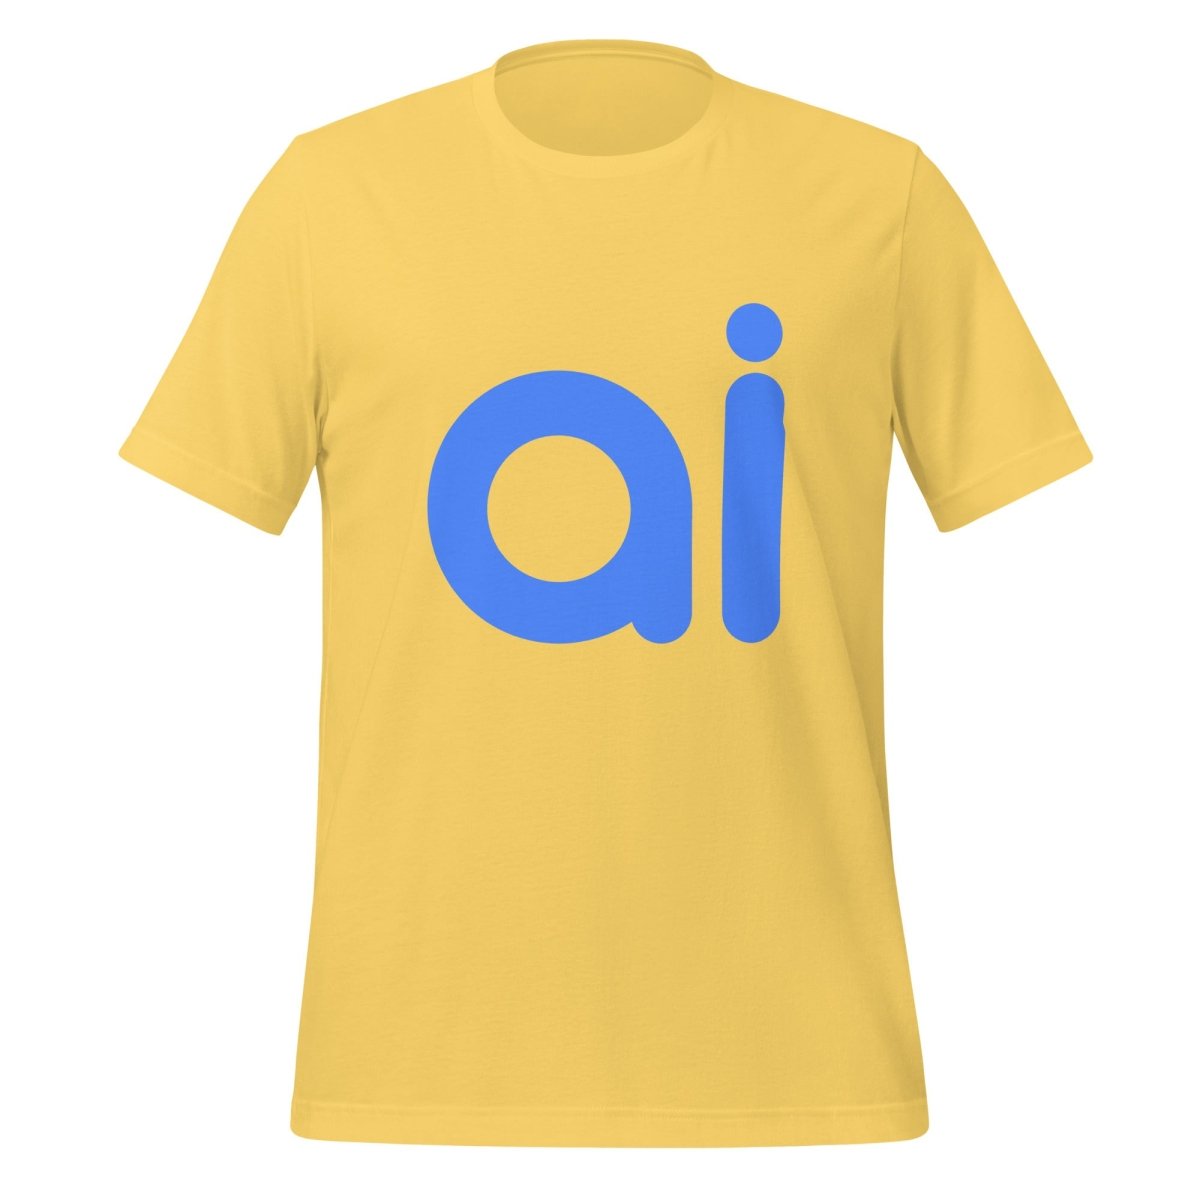 ai T - Shirt (unisex) - Yellow - AI Store